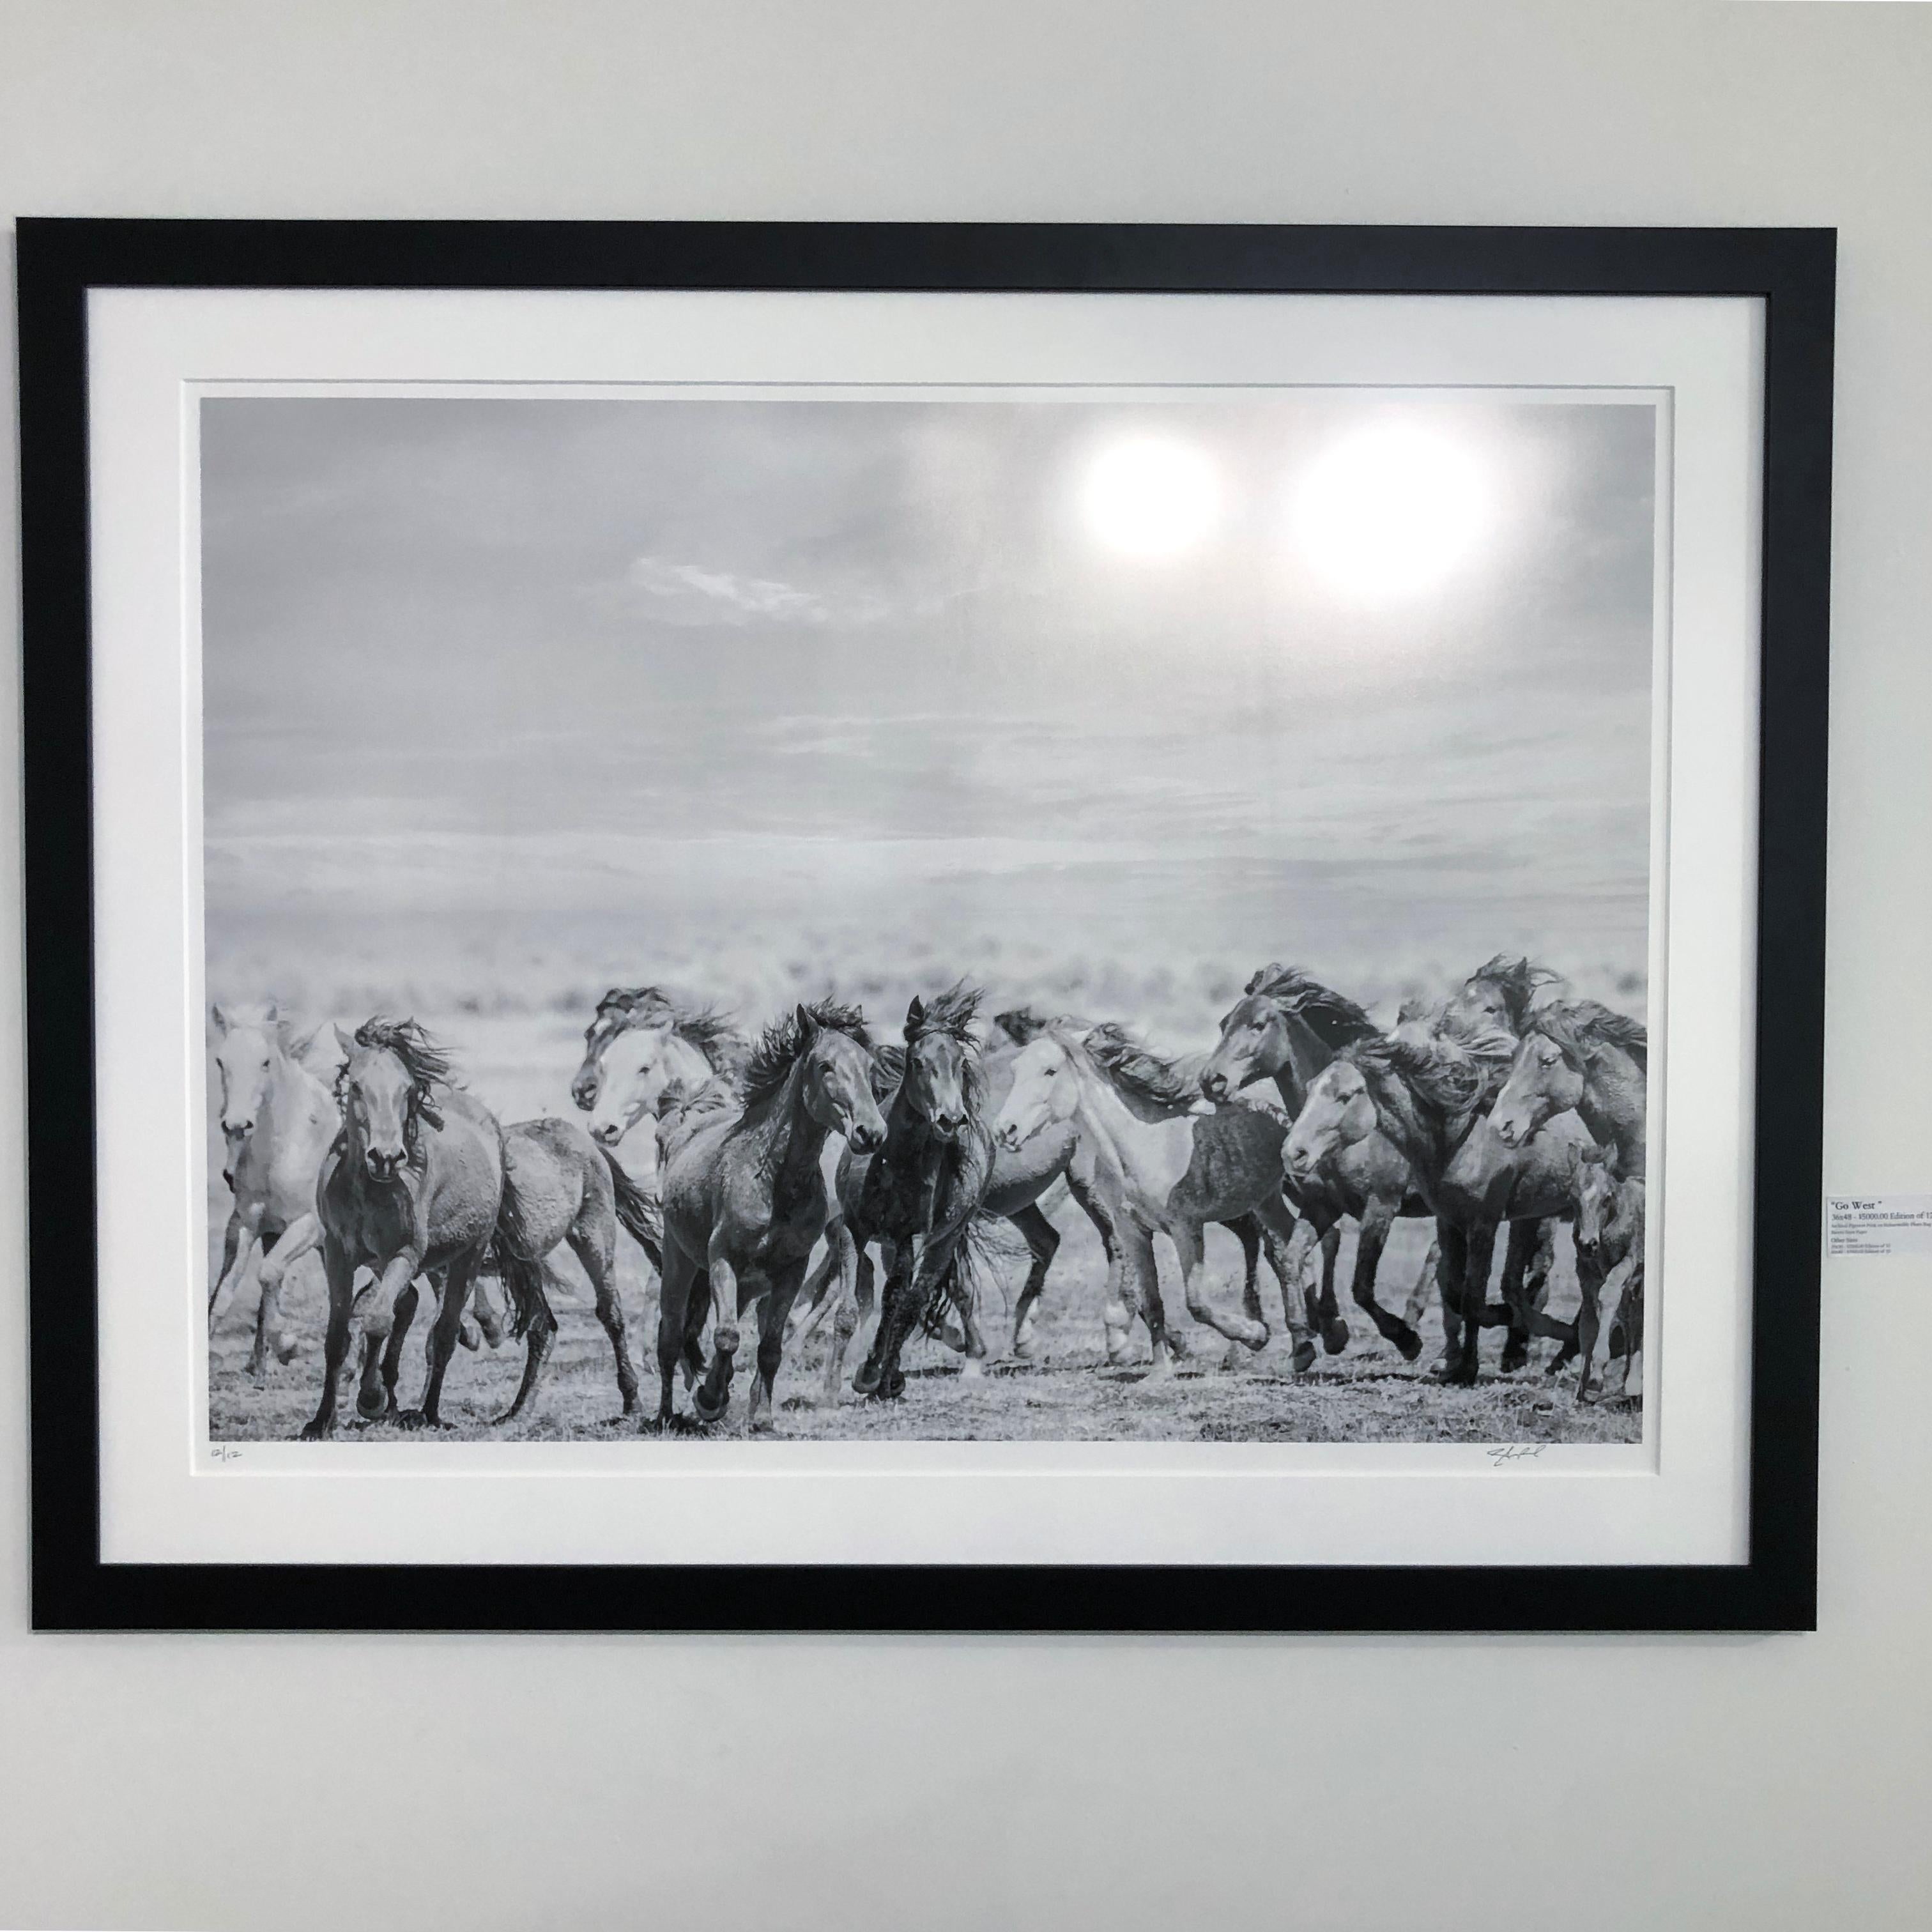 Il s'agit d'une photographie contemporaine en noir et blanc de chevaux sauvages. 
